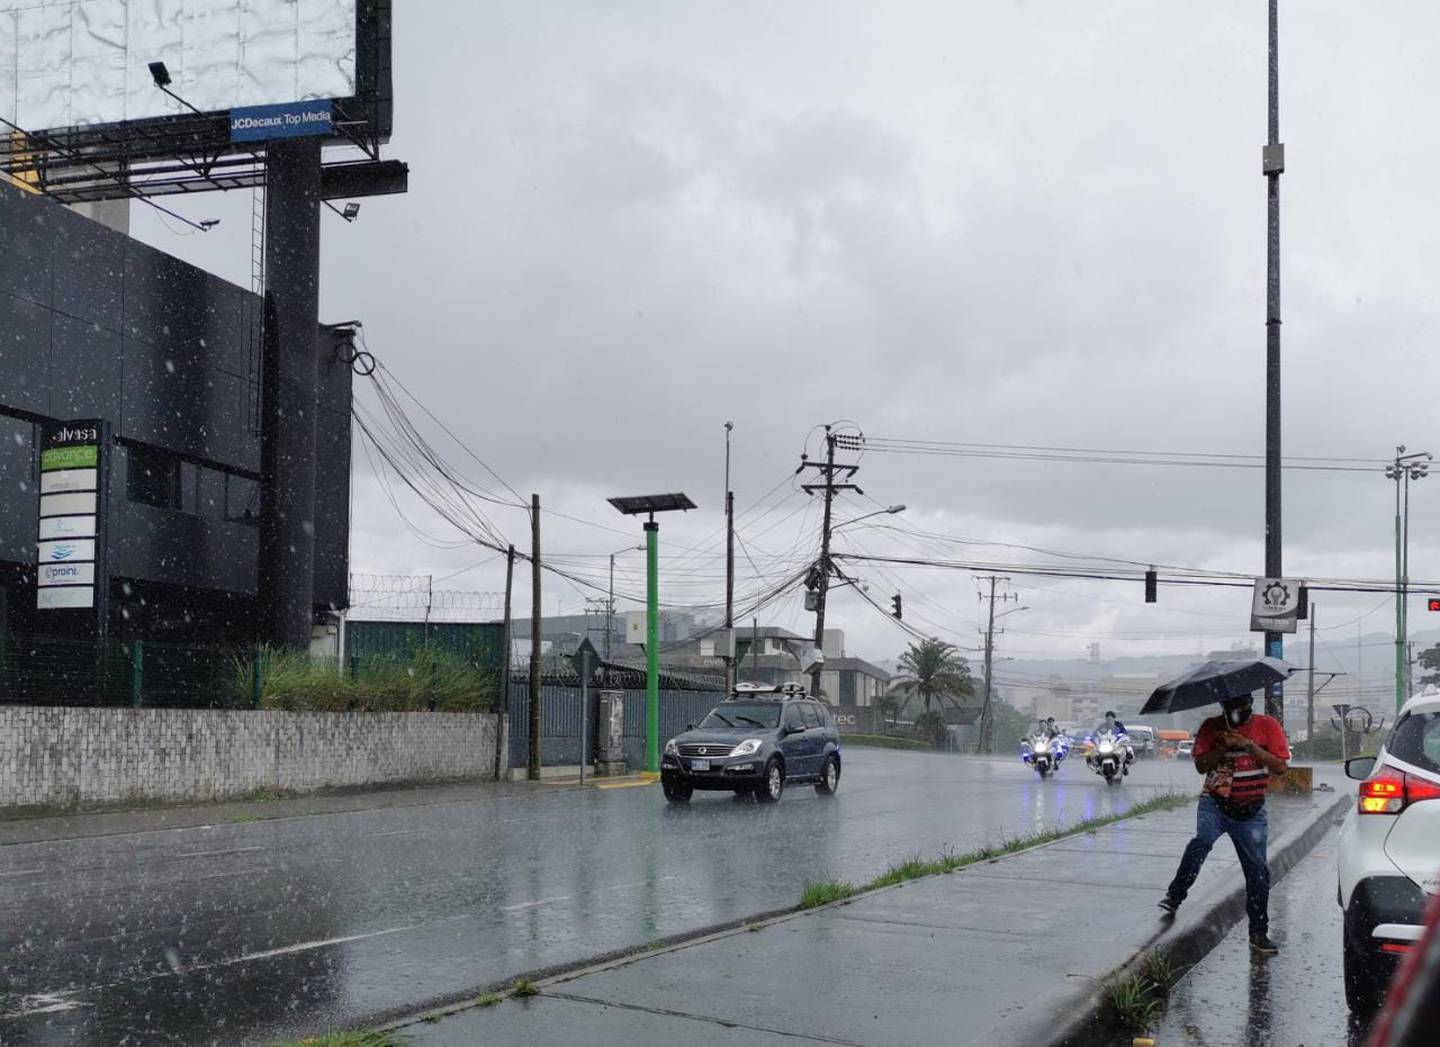 La influencia de la séptima onda tropical de la temporada deja lluvias entre moderadas y fuertes en gran parte del territorio este lunes. Foto: Reiner Montero.